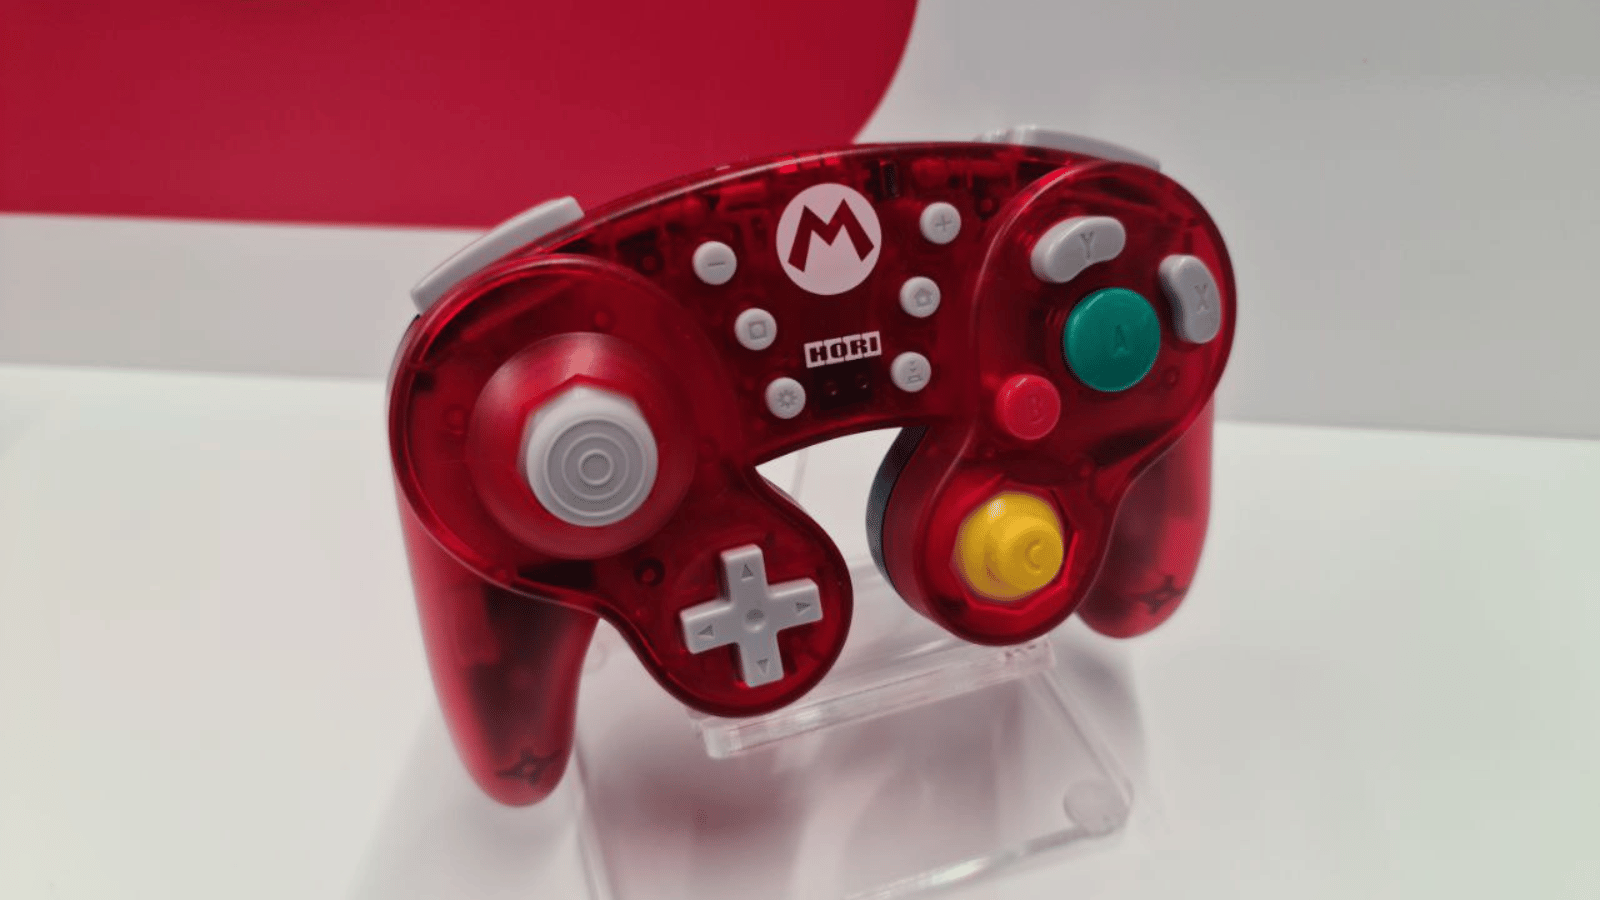 Nintendo Store - Hori controller